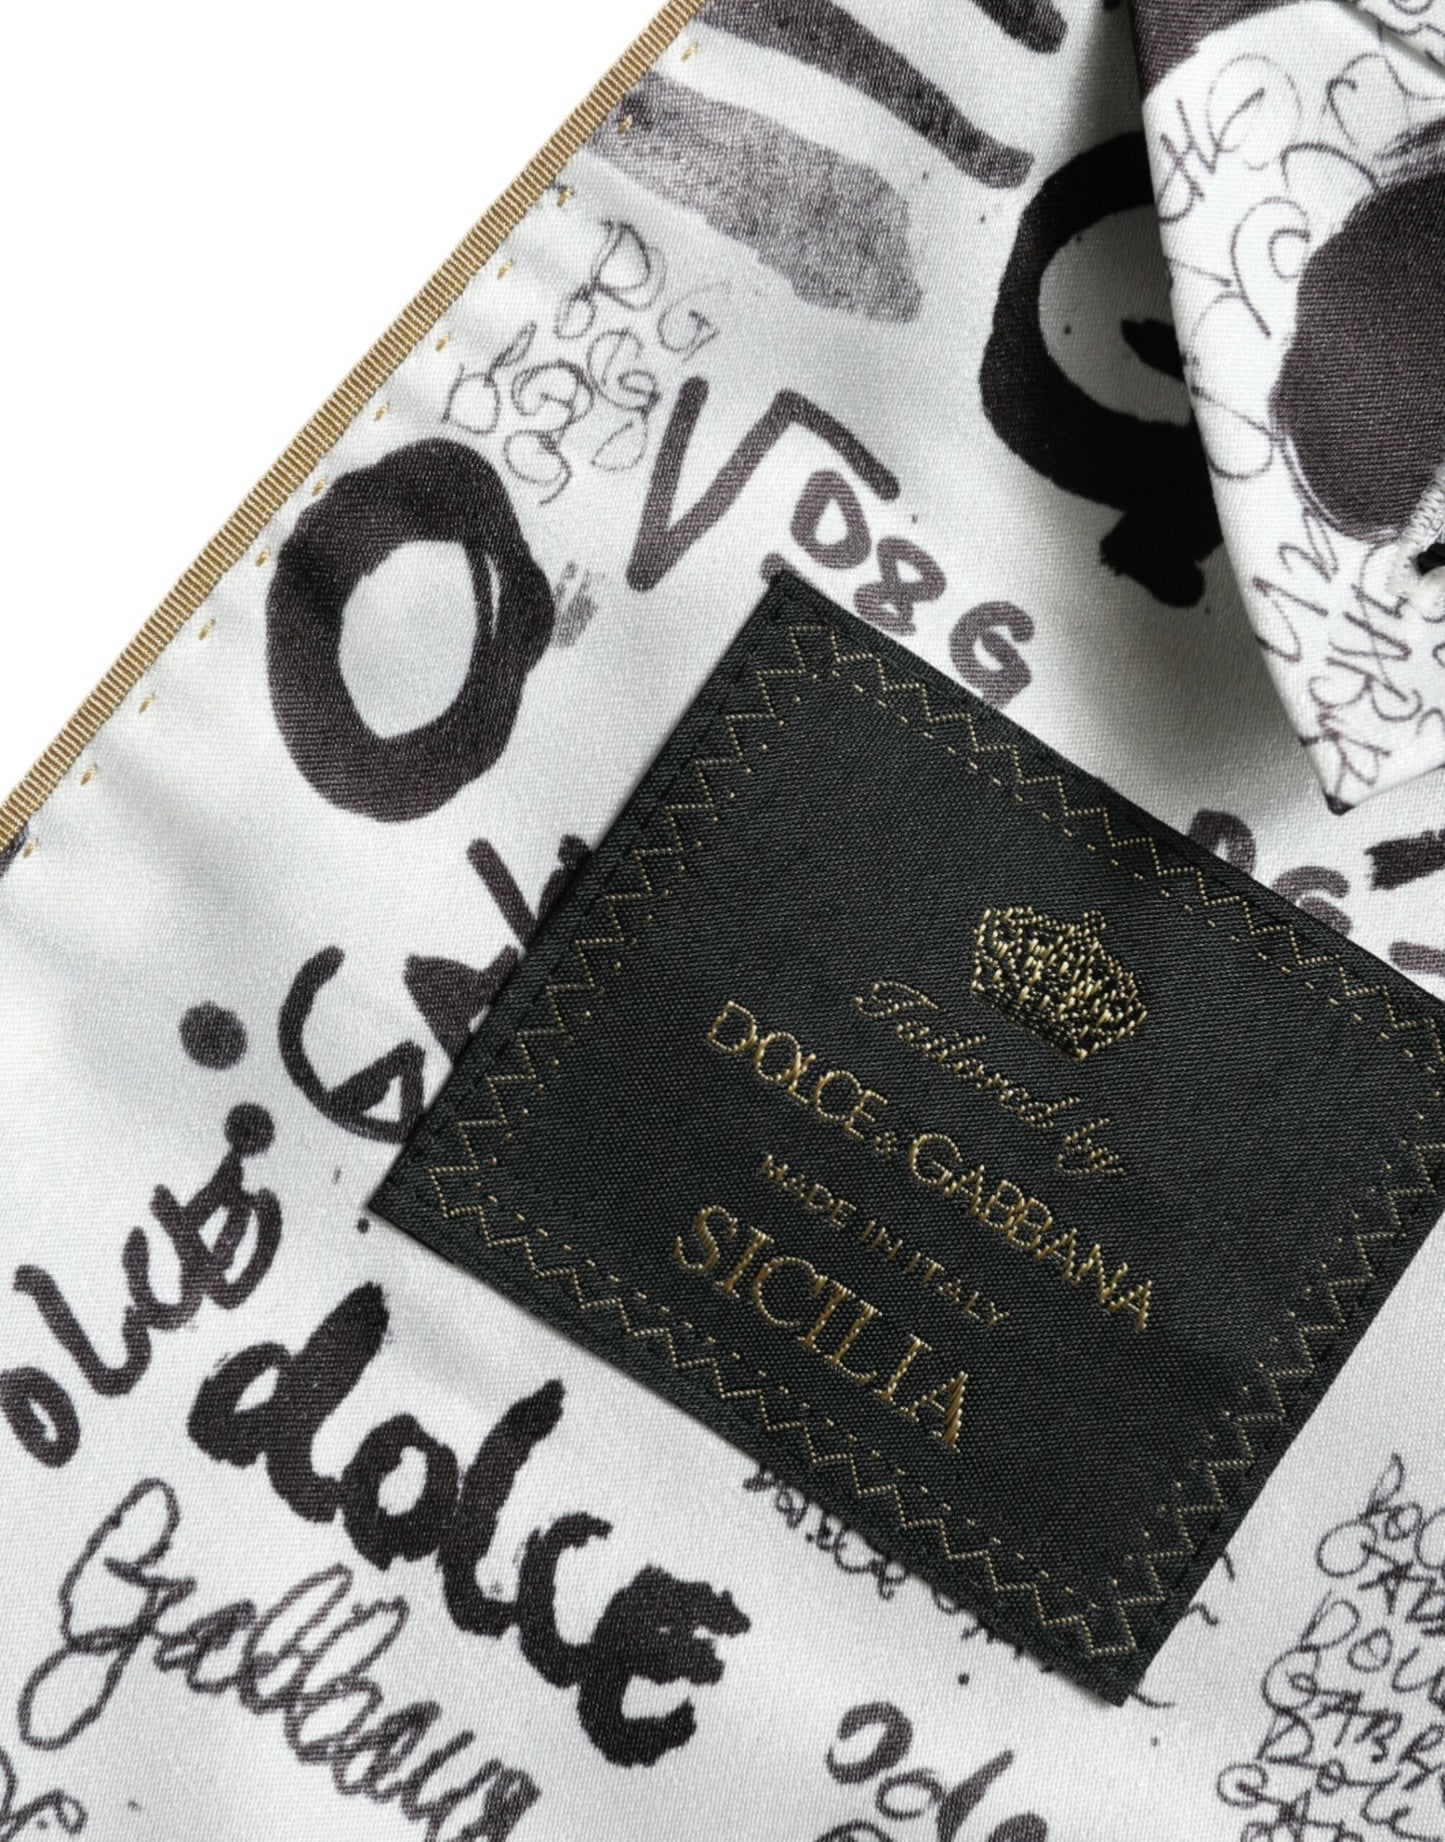 Dolce & Gabbana Black Striped SICILIA Double Breasted Jacket - DEA STILOSA MILANO